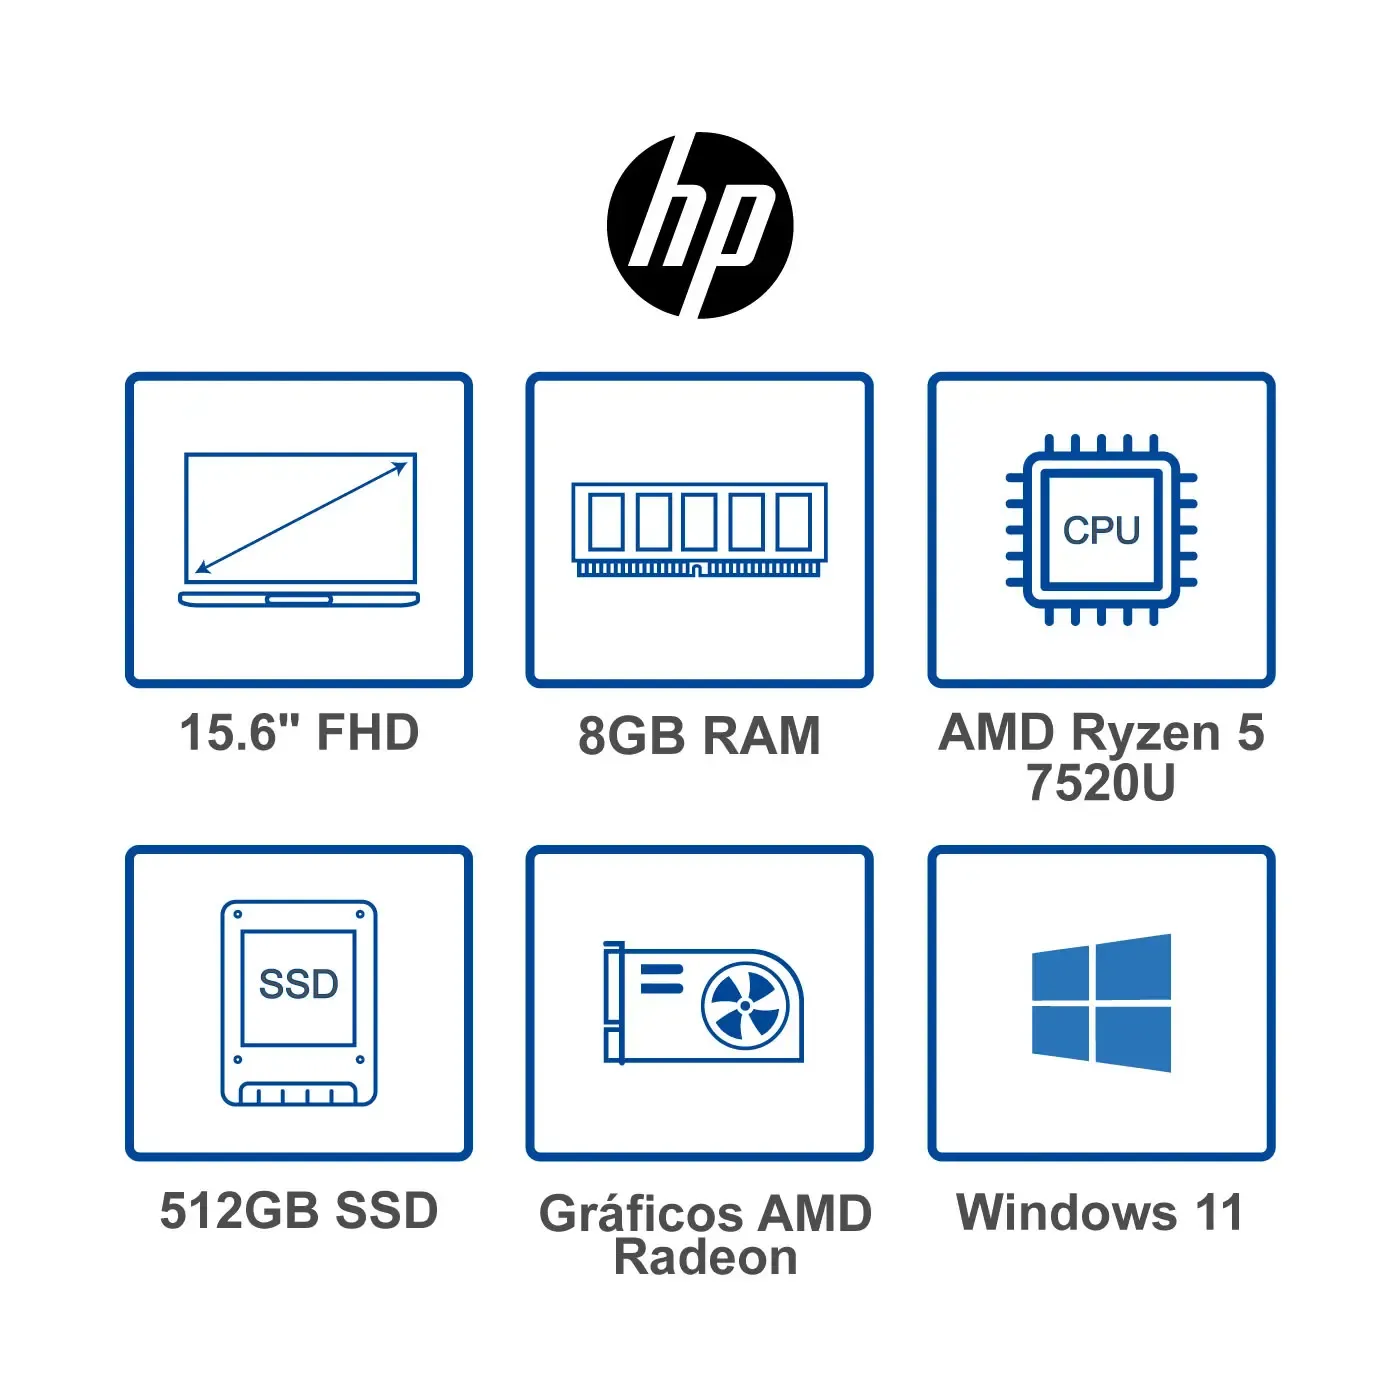 Computador Portátil HP 15.6" Pulgadas Fc0008la AMD Ryzen 5 - RAM 8GB - Disco SSD 512GB - Azul